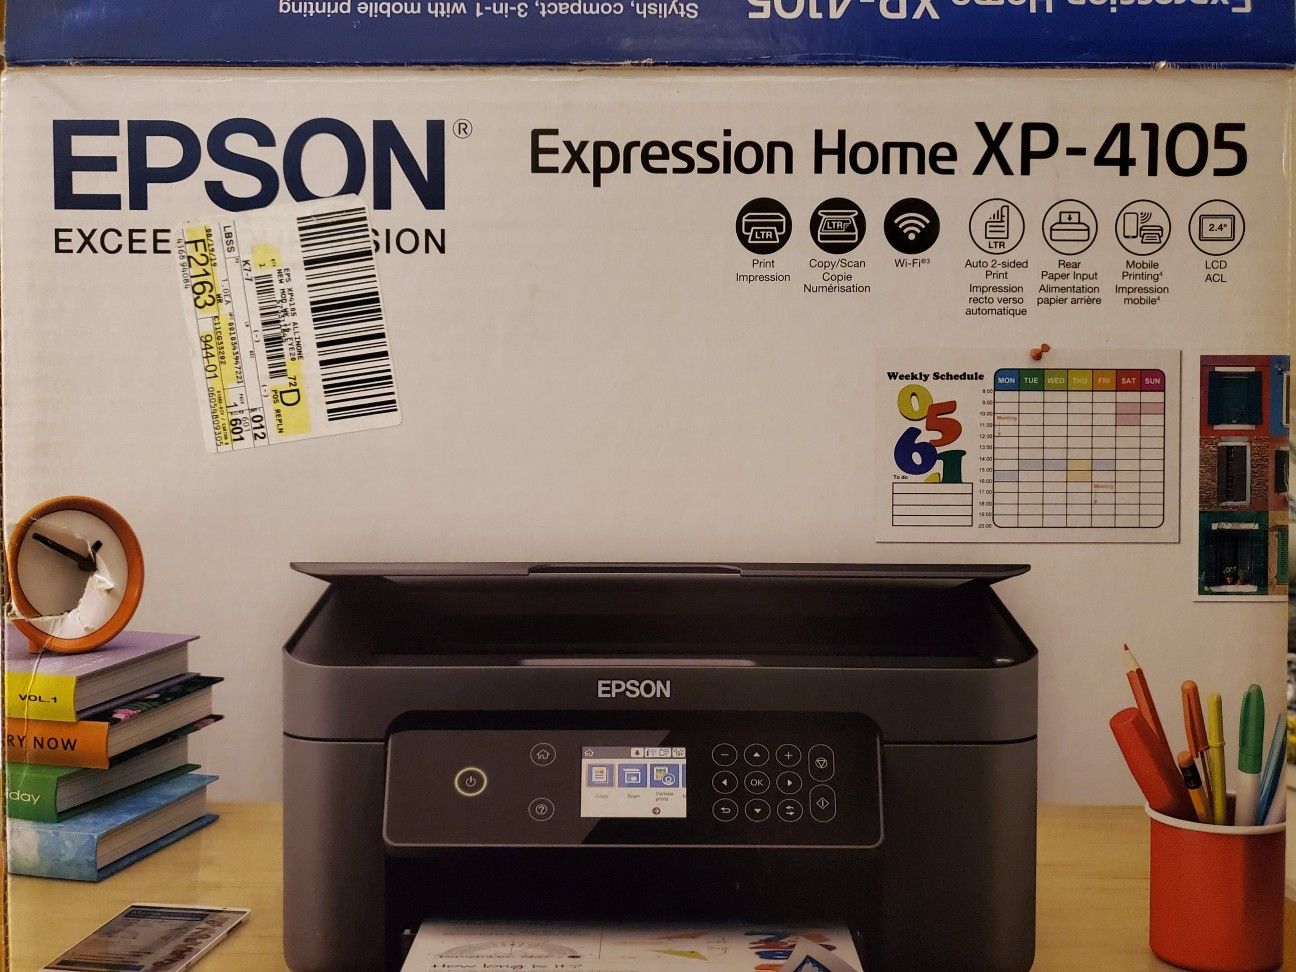 EPSON XP-410